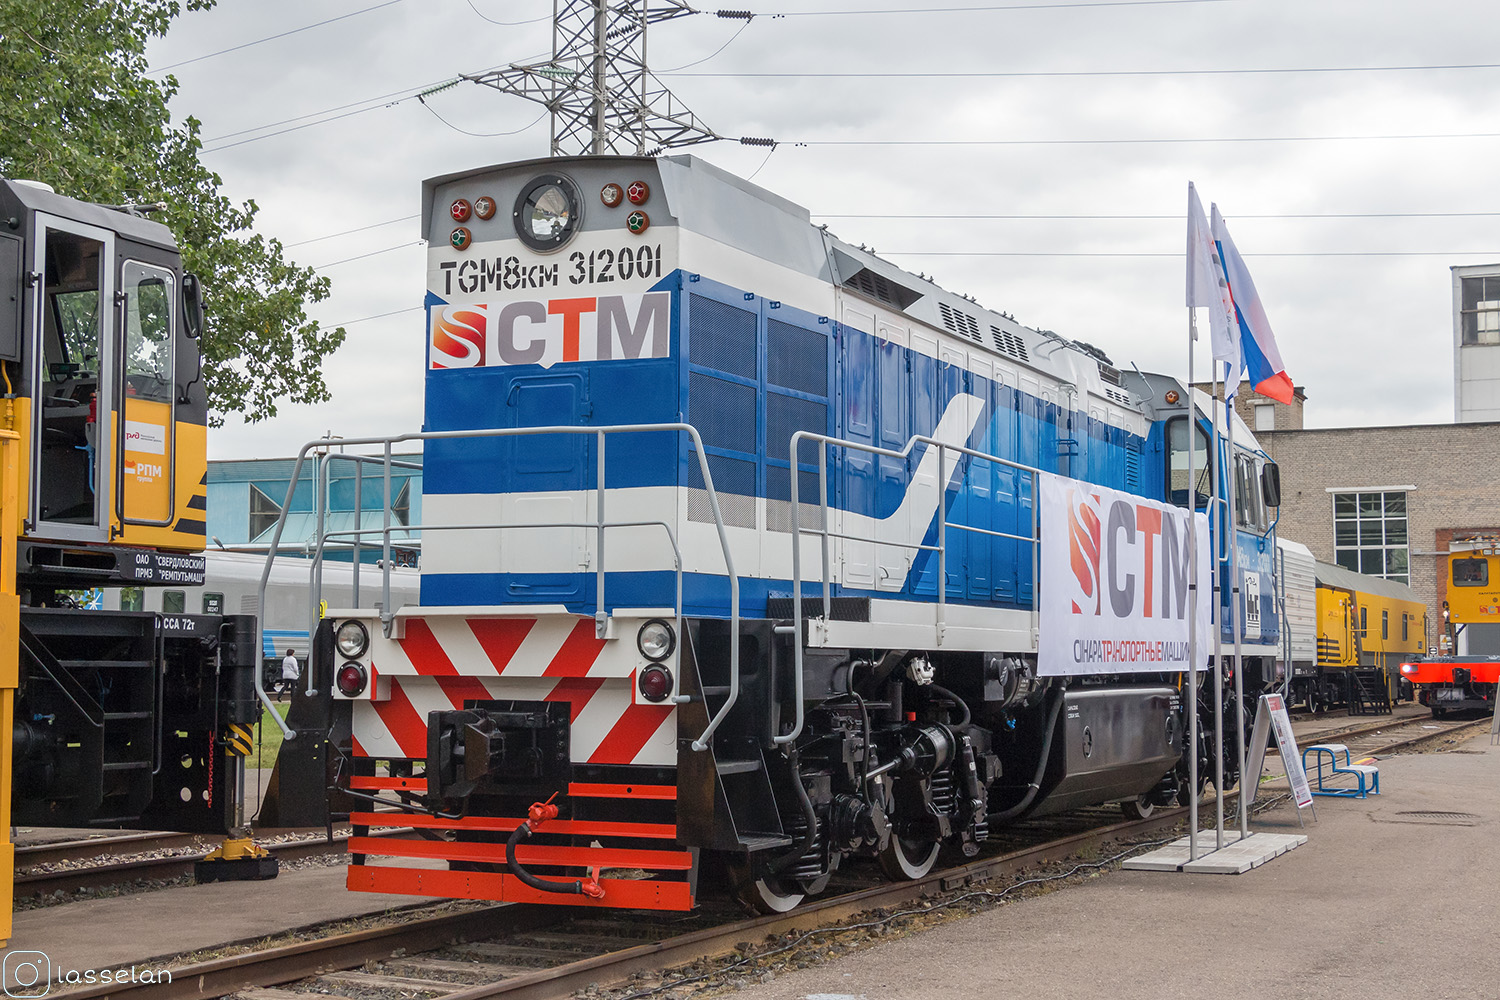 TGM8KM-312001; Московская железная дорога — VI Международный железнодорожный салон "ЭКСПО 1520" 2017